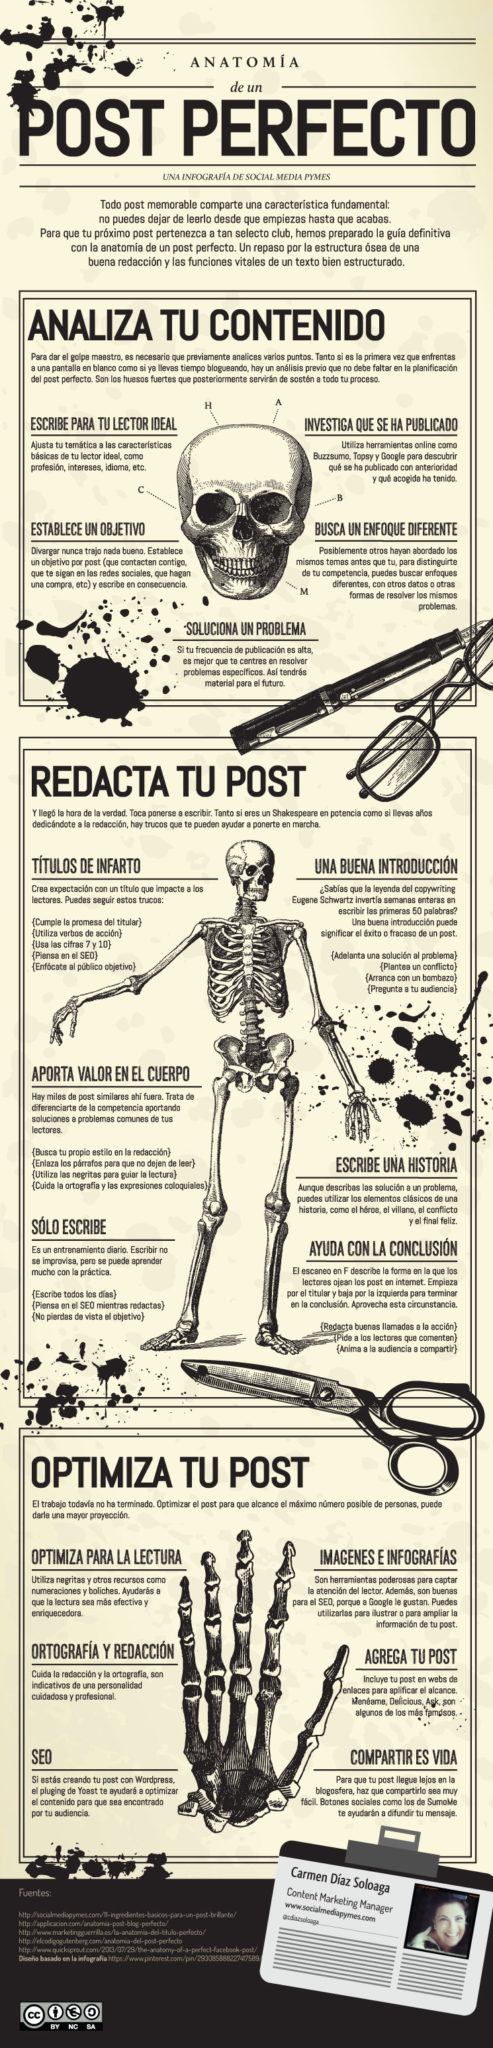 anatomia-post-perfecto-infografia